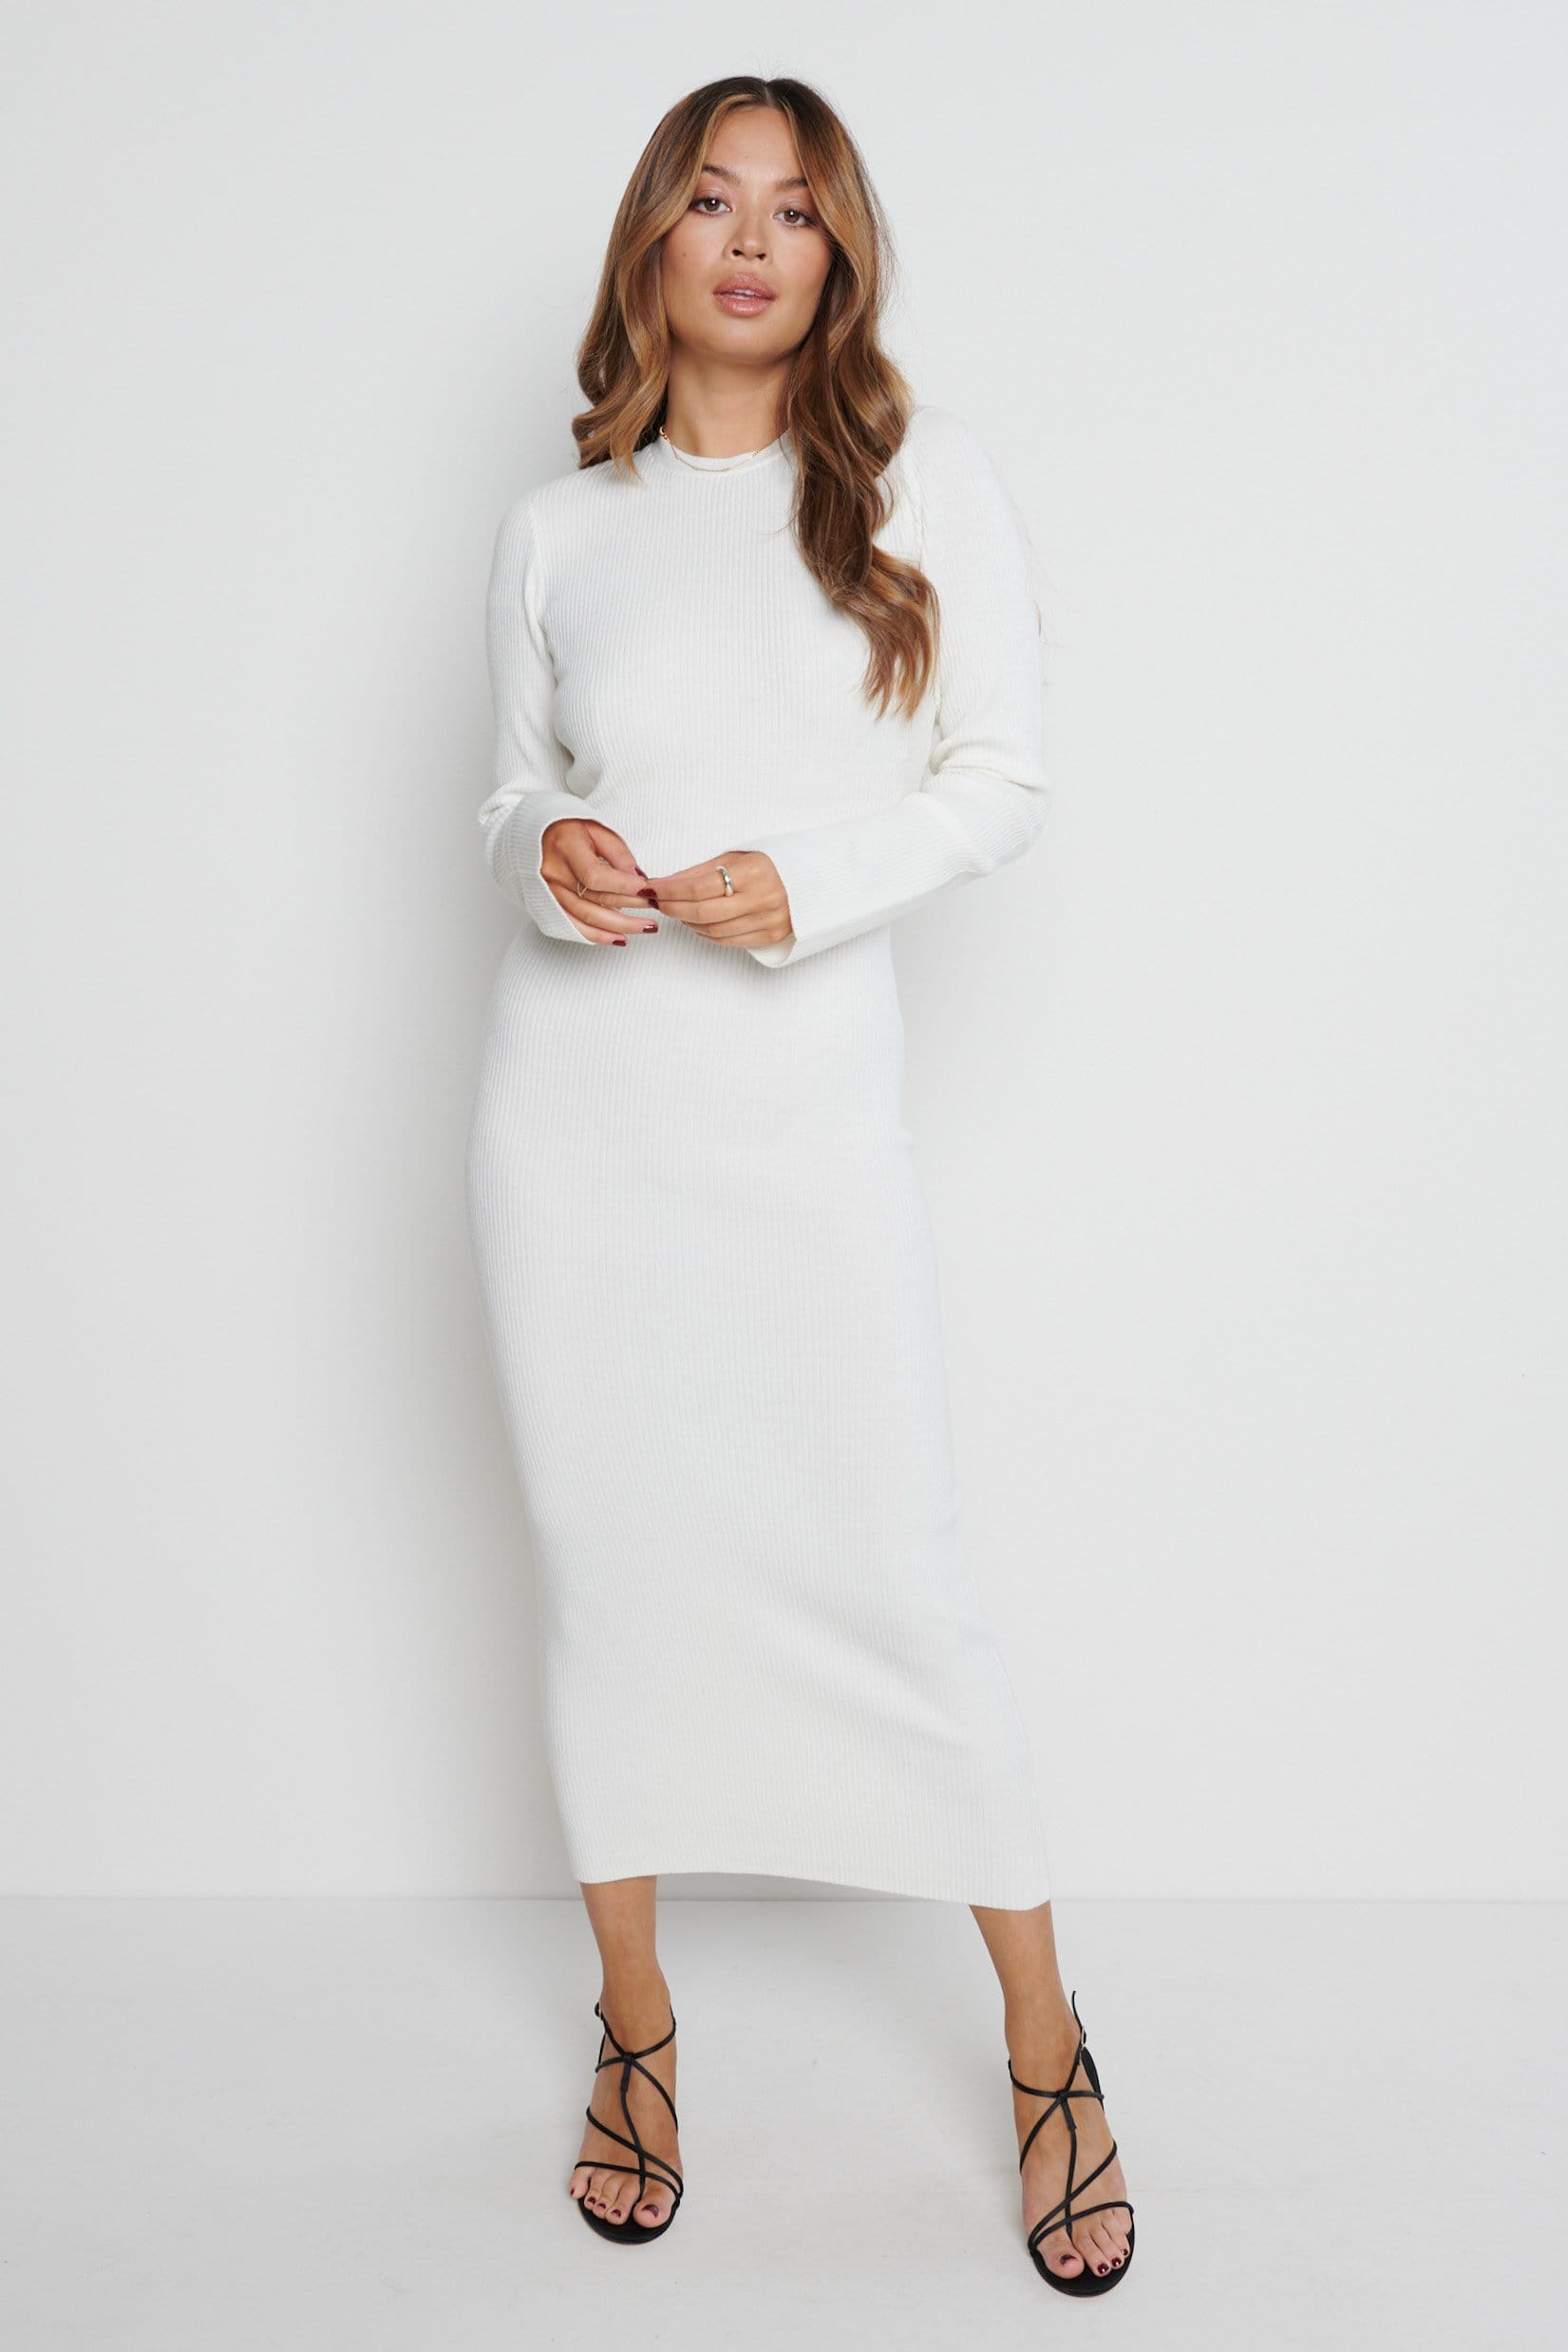 Lia Backless Knit Dress - Cream, L